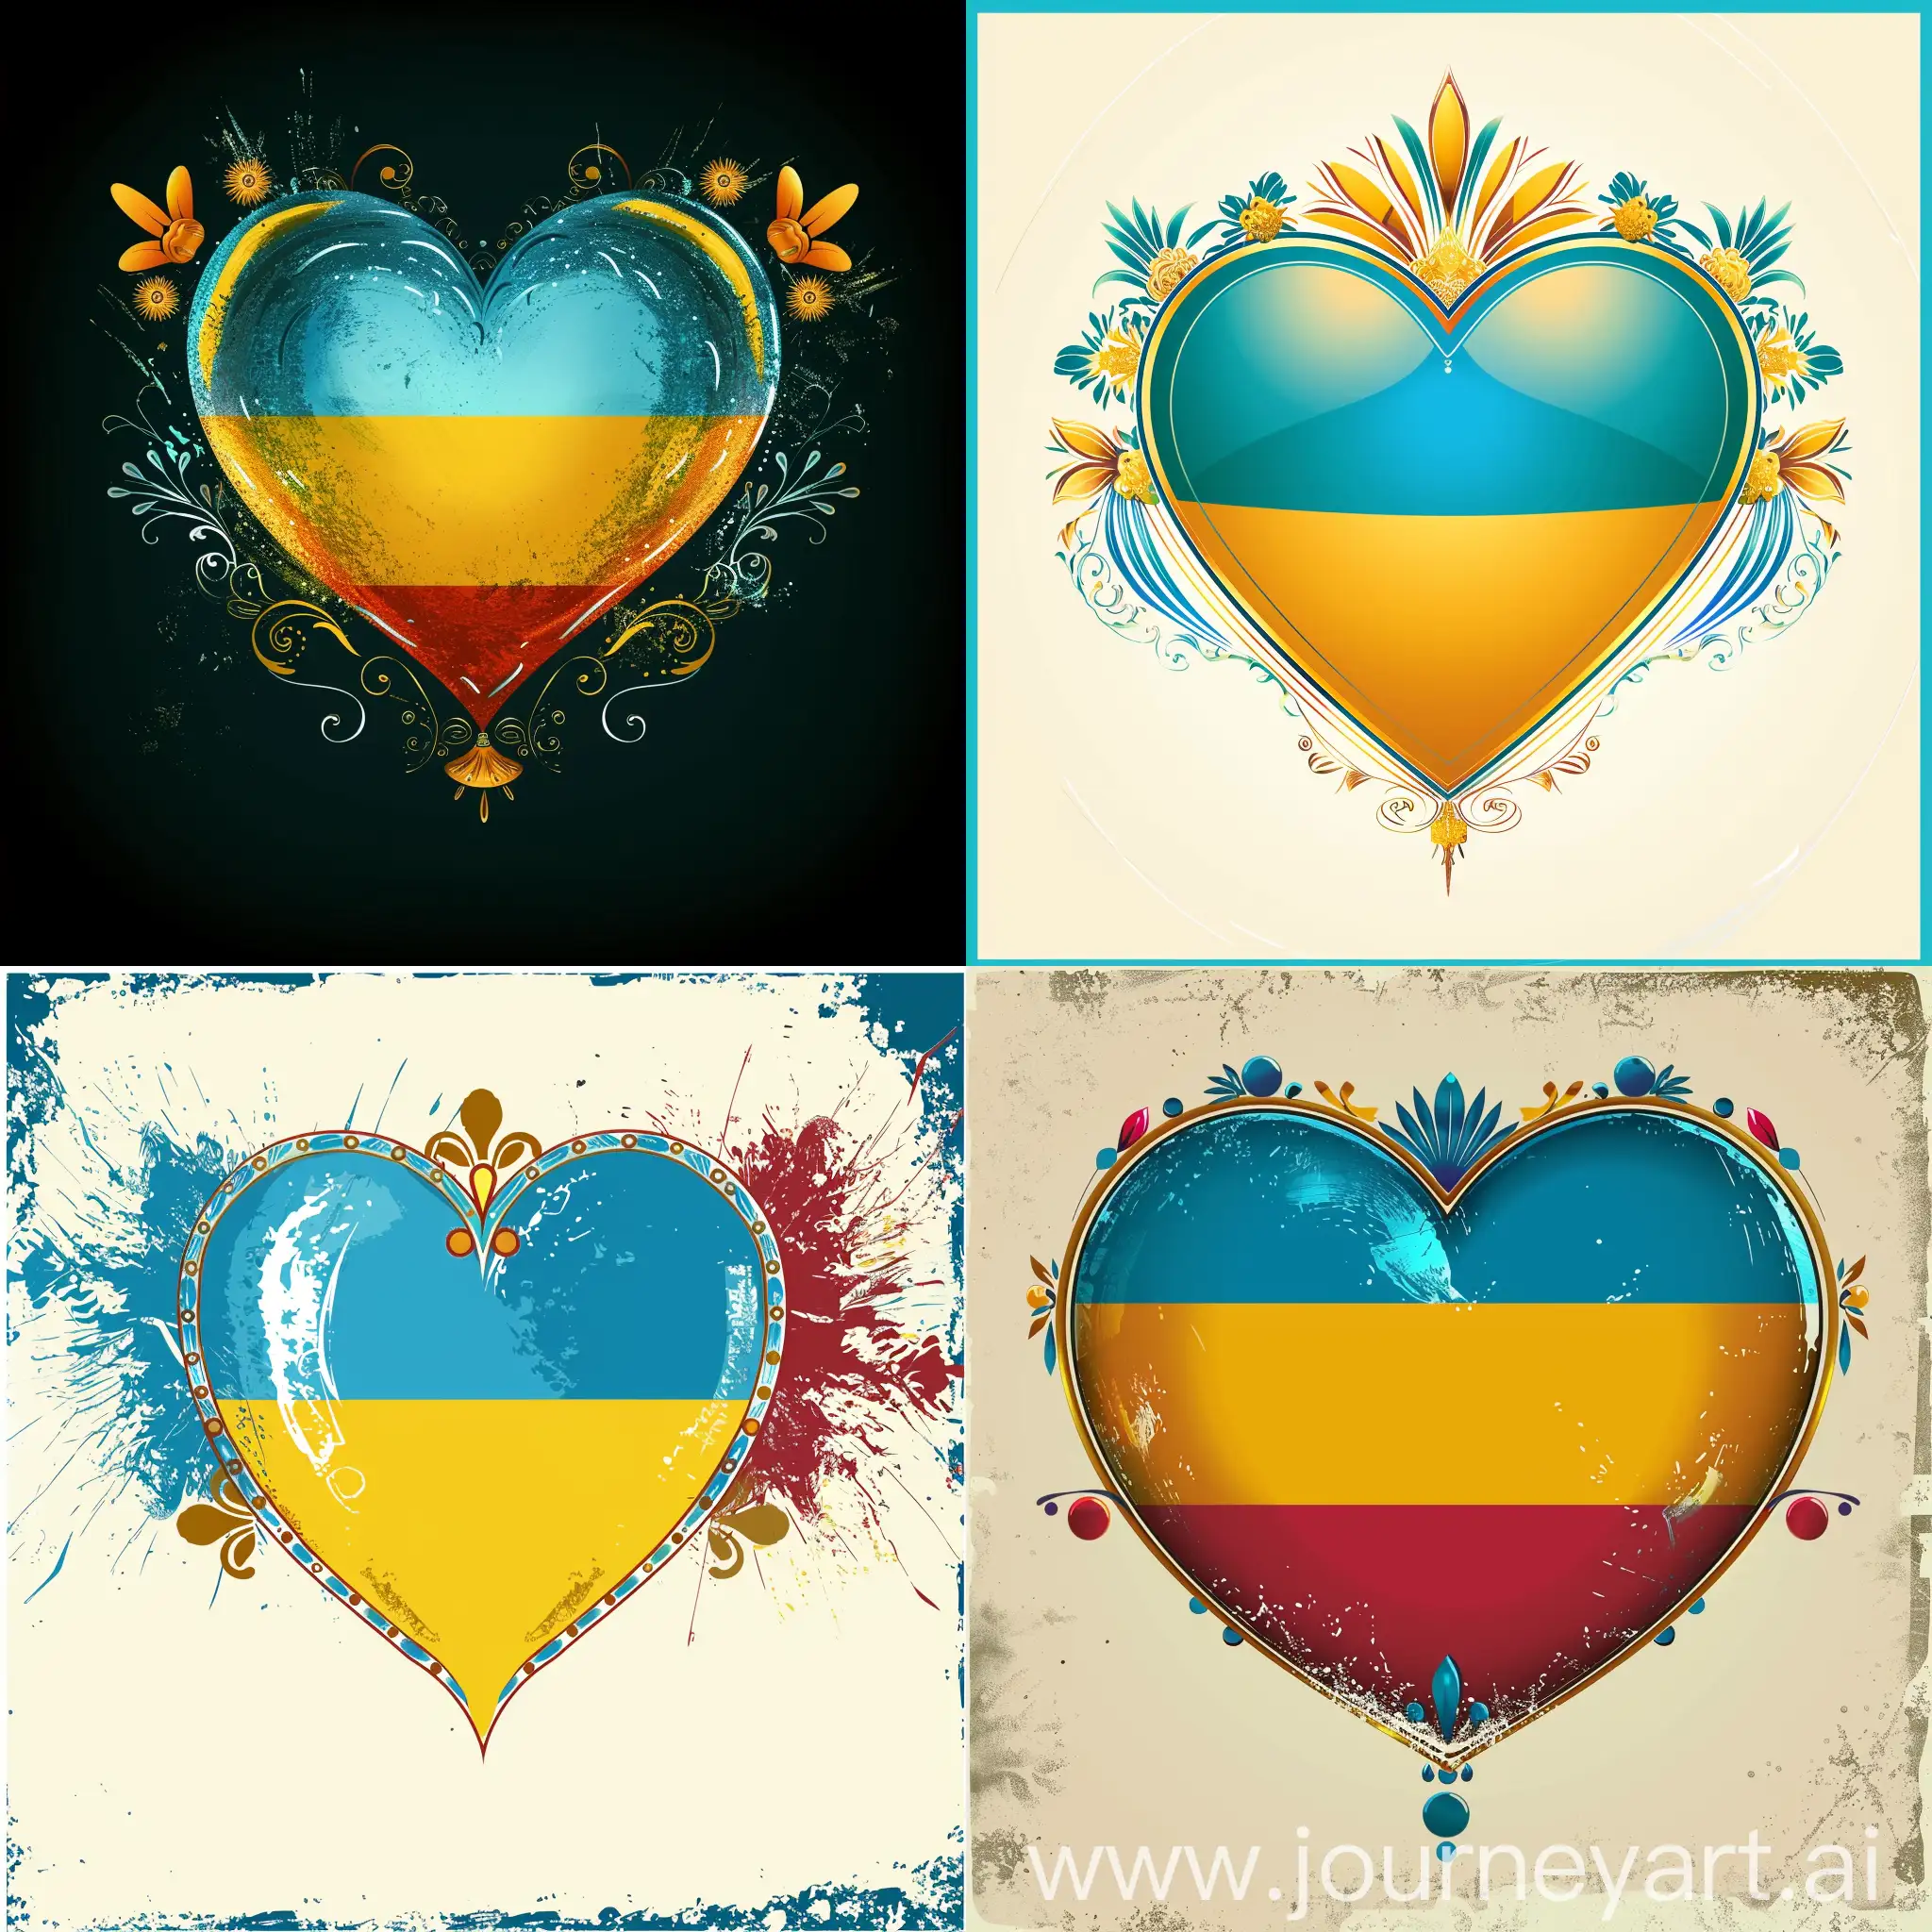 привет изображение создай сердце с цветом флага казахстана с орнаментами по бокам сердца